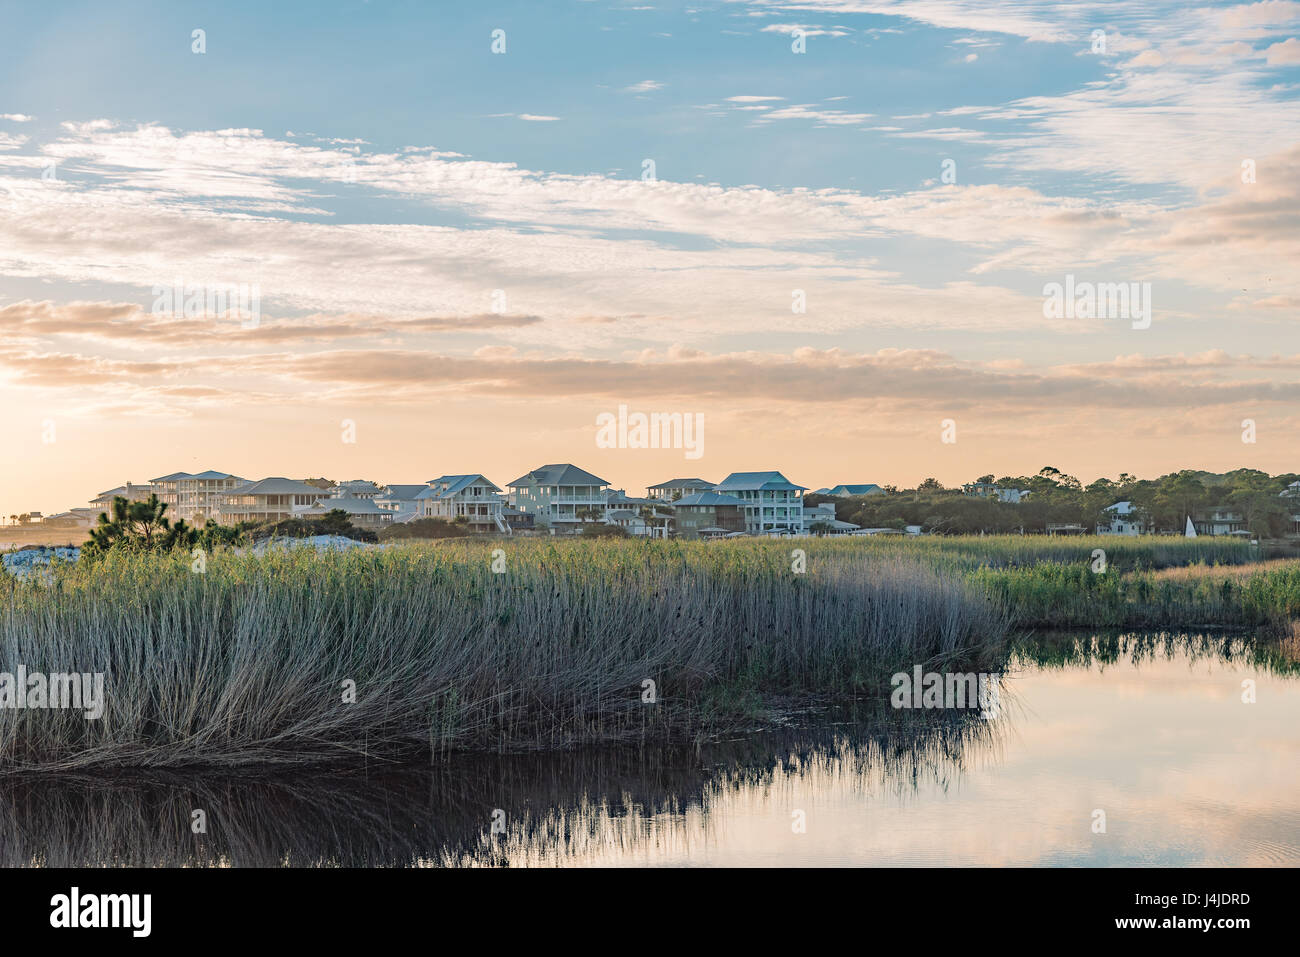 Filas de casas caras a lo largo de la orilla de un lago cerca de dunas costeras Destin, Florida, EE.UU., ofrece un tranquilo vida costera. Foto de stock